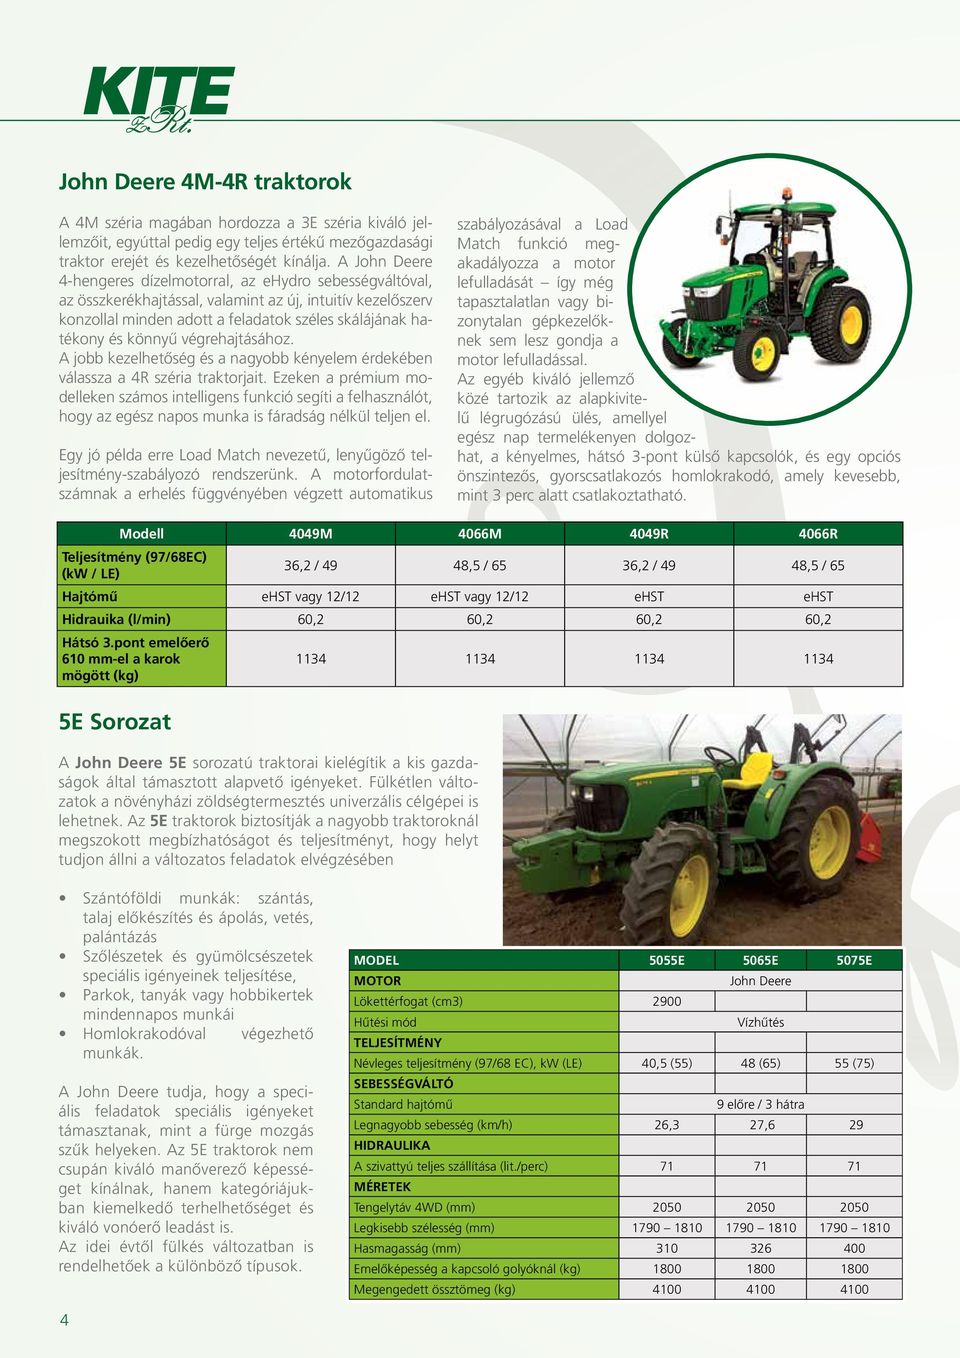 végrehajtásához. A jobb kezelhetőség és a nagyobb kényelem érdekében válassza a 4R széria traktorjait.